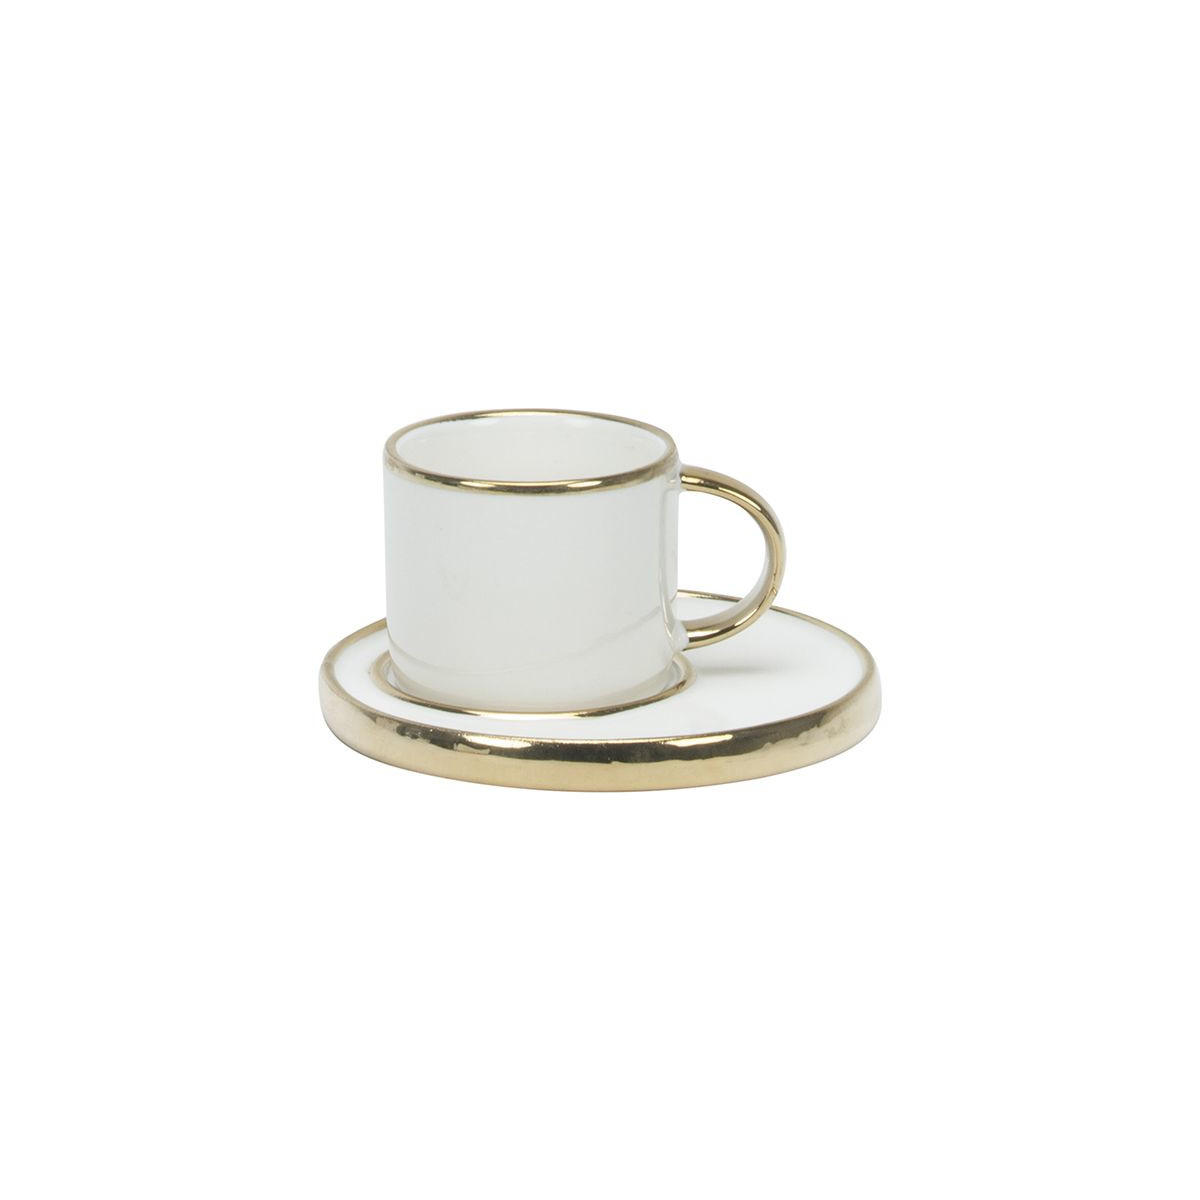 Elegantes Espresso Tassen Set für 6 Personen 12 teilig / Weiß mit Gol,  39,00 €